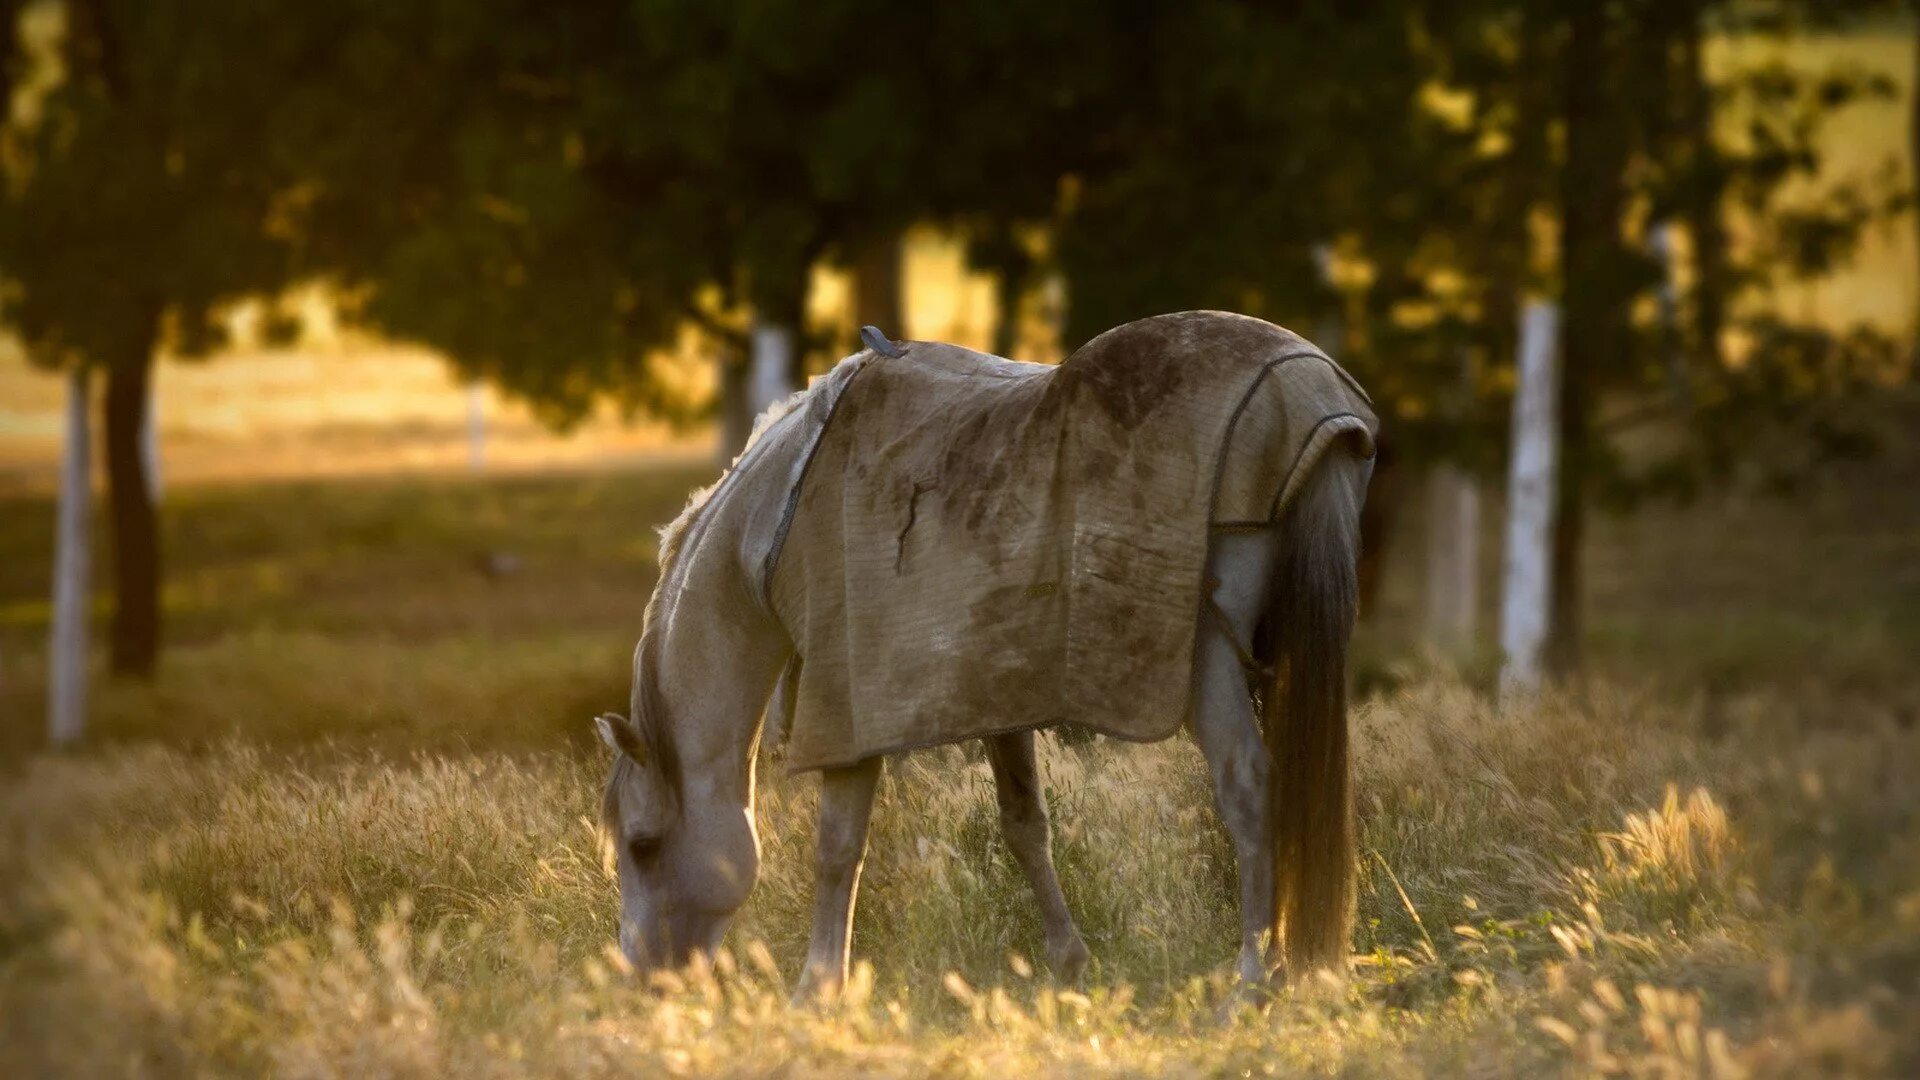 Подам лошадь. Лошадь в поле. Грустная лошадь. Лошади на закате. Конь в траве.